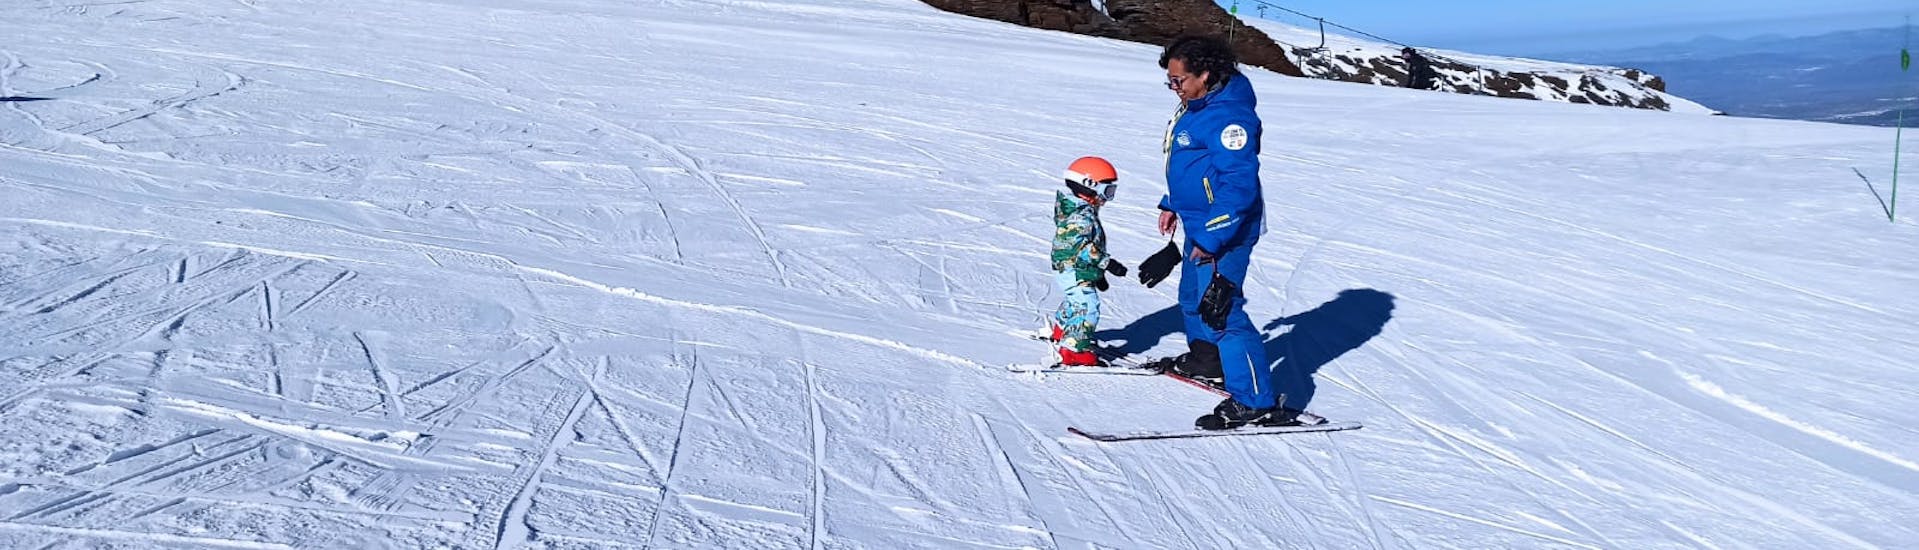 Les enfants apprennent à skier lors d'un cours de ski pour tous les niveaux avec l'Ecole Universelle de Ski Sierra Nevada.